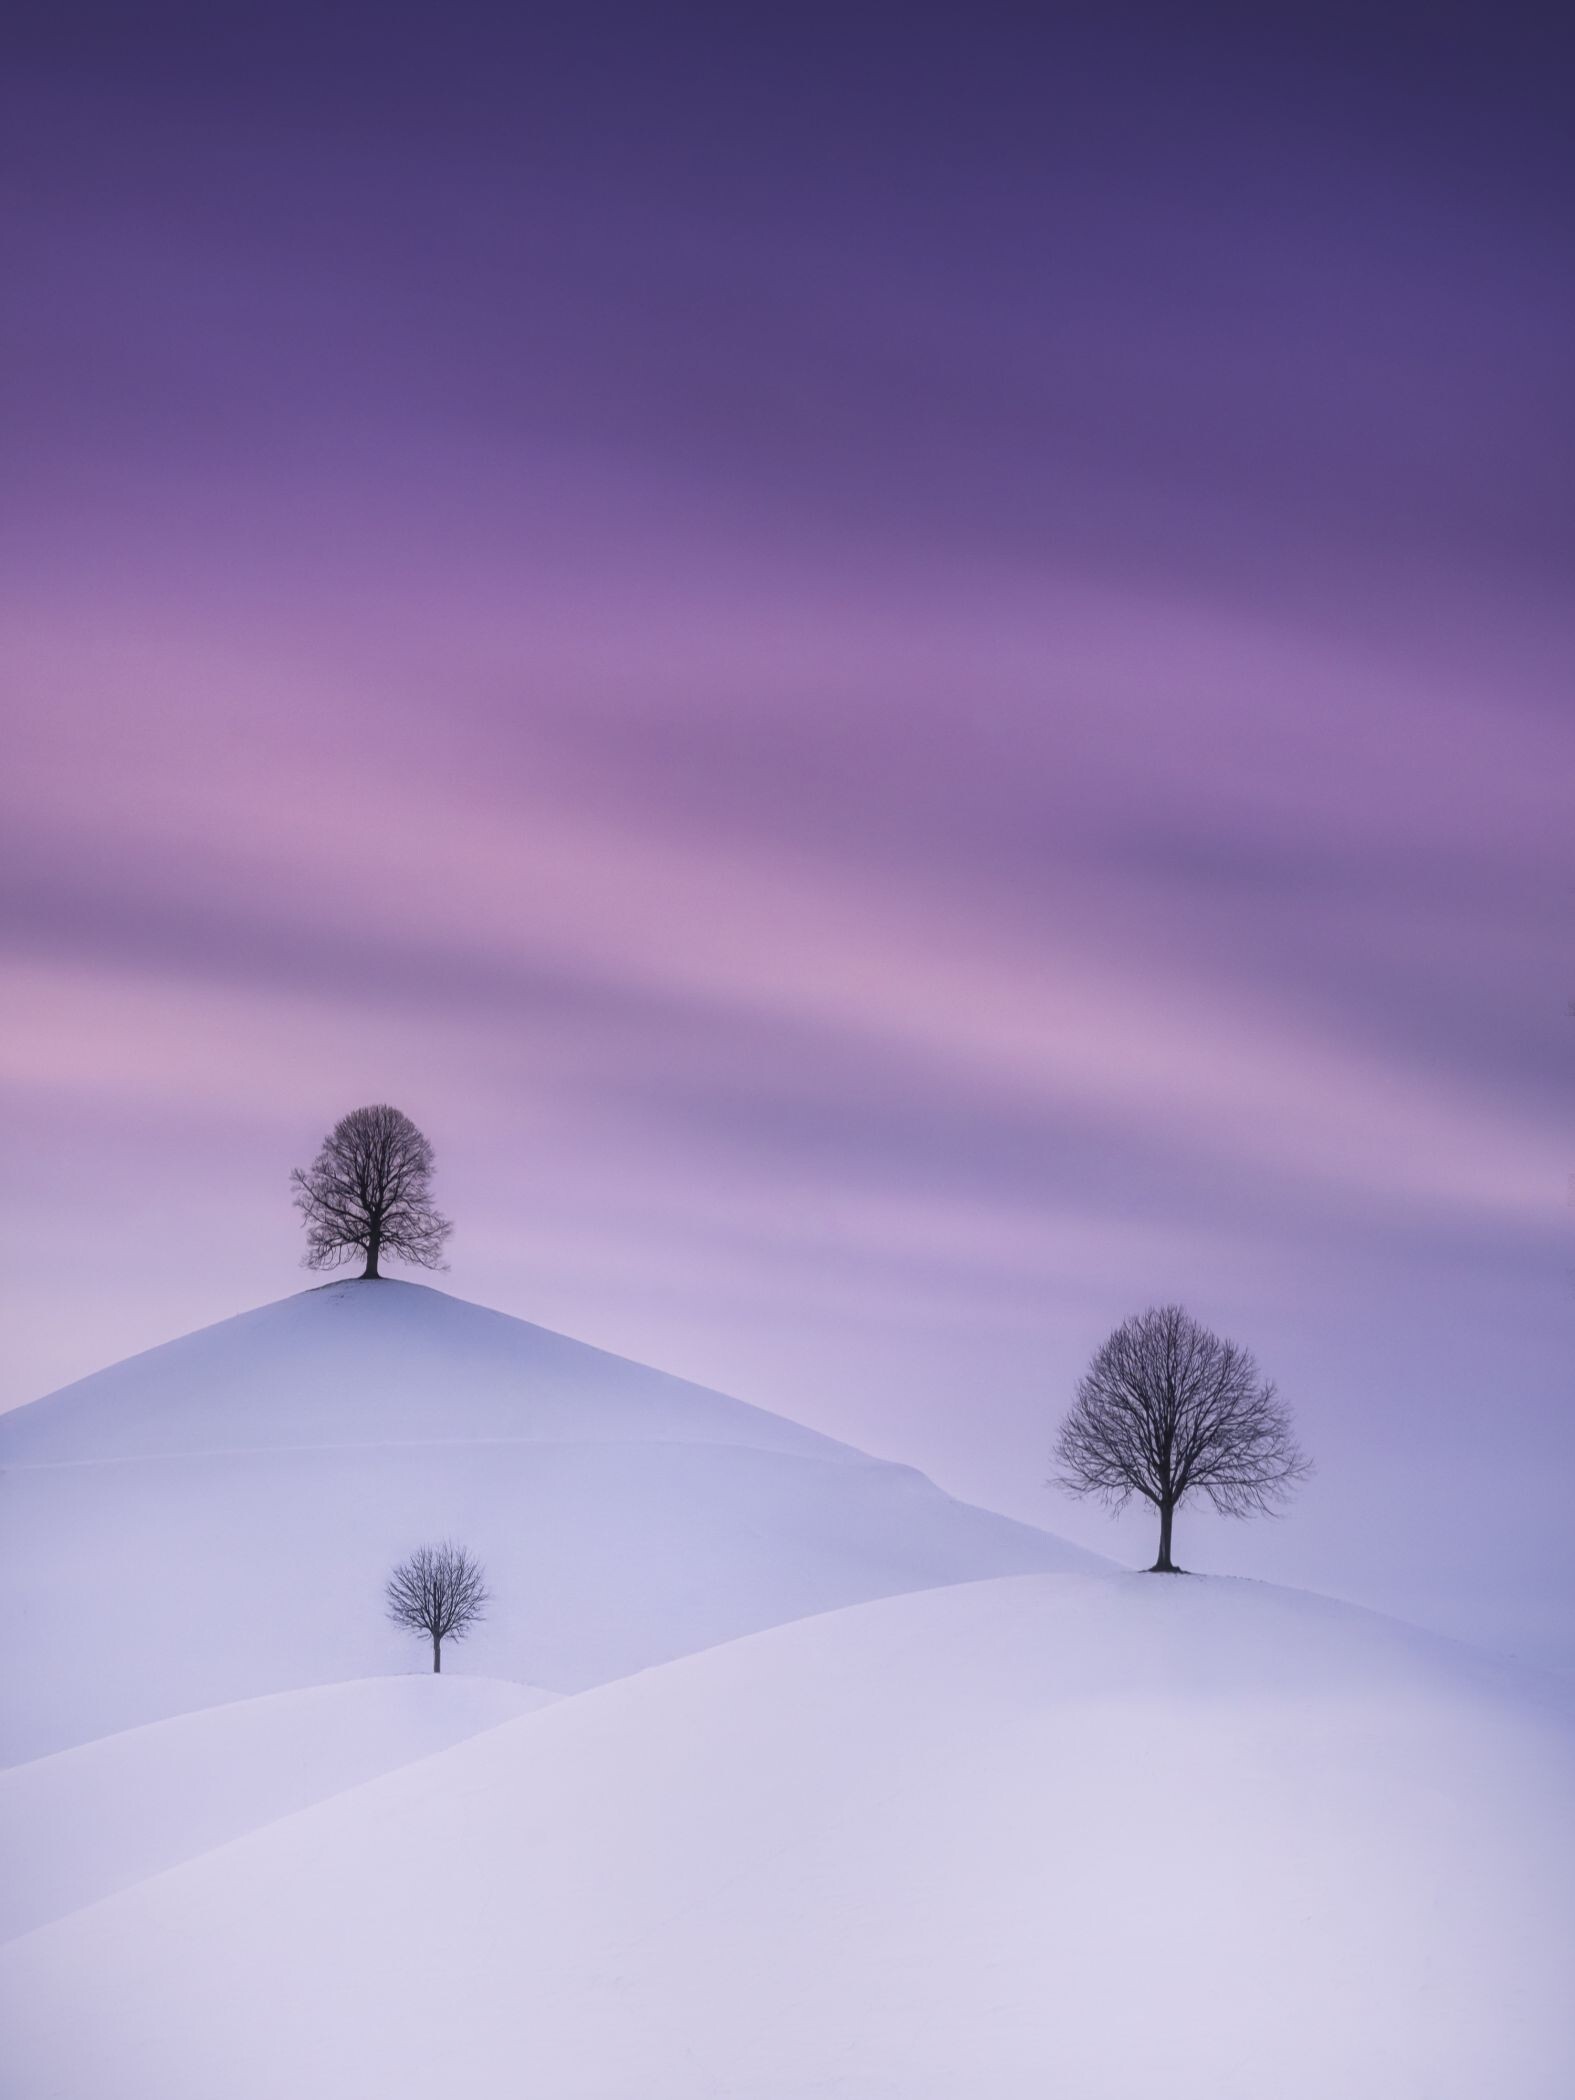 3 место в номинации Пейзажная фотография года 2021. Зимой в Швейцарии. Автор Бен Гуд